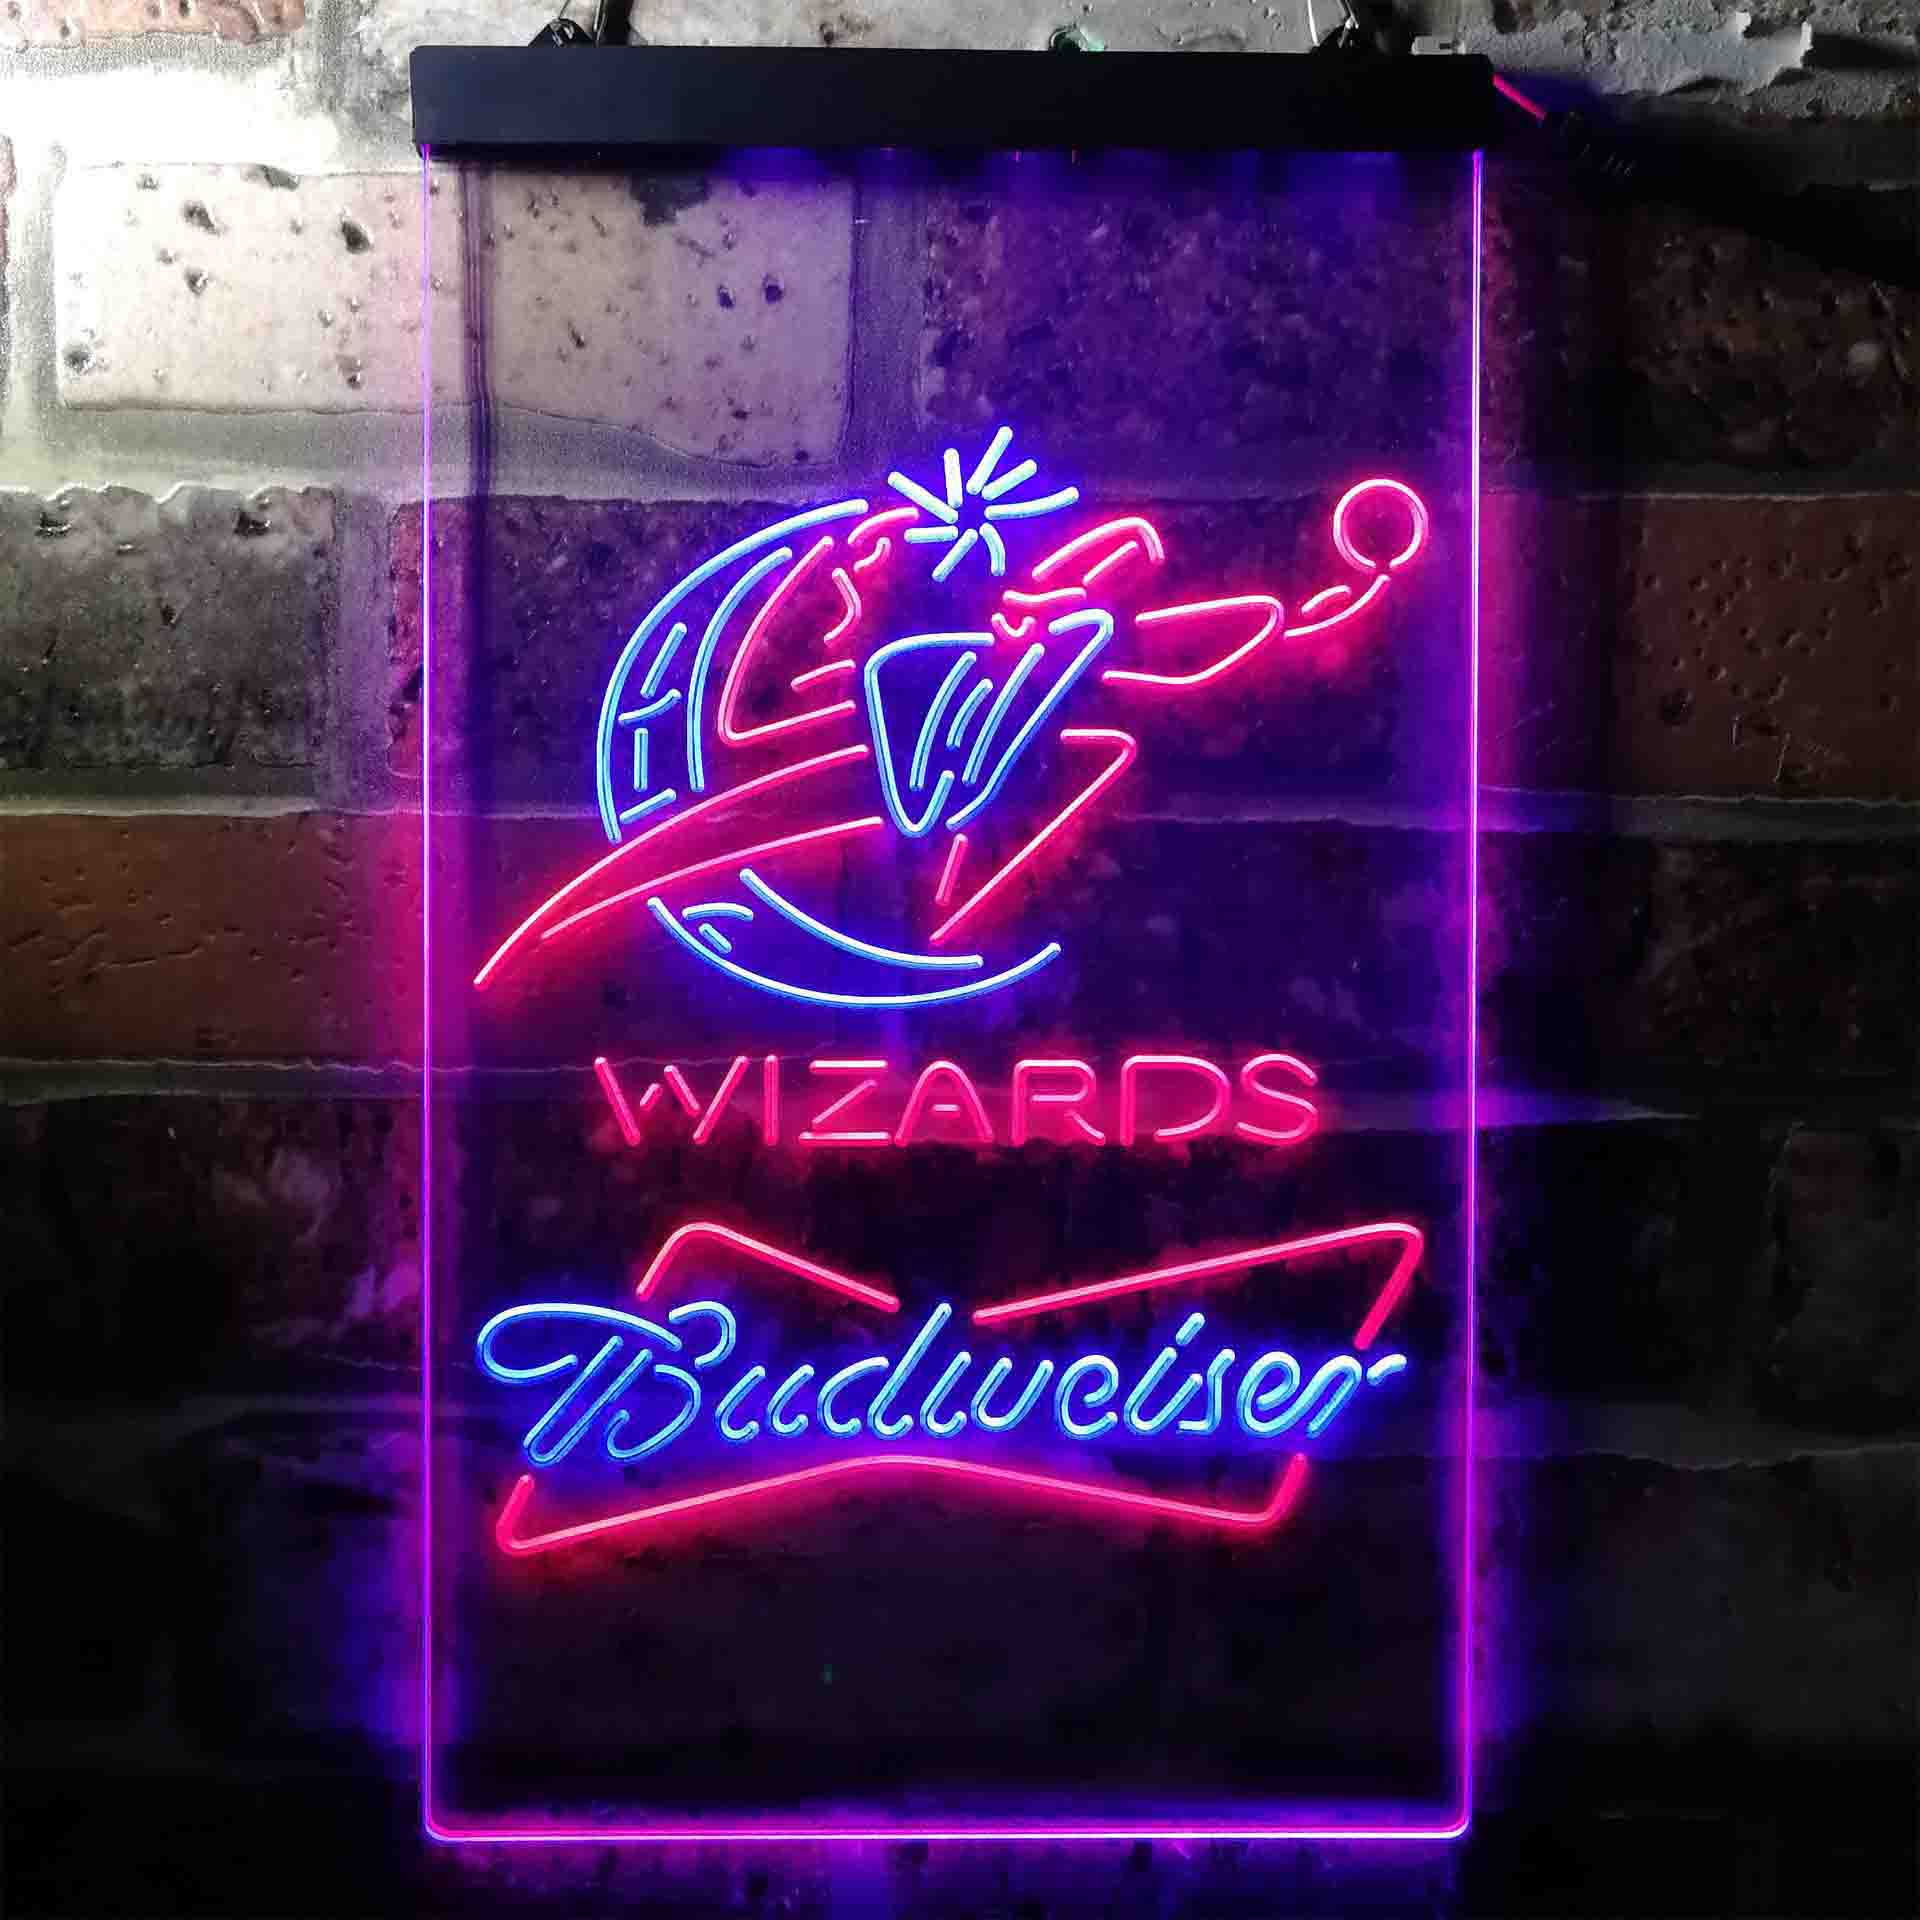 Washington Wizards Budweiser Neon-Like LED Sign